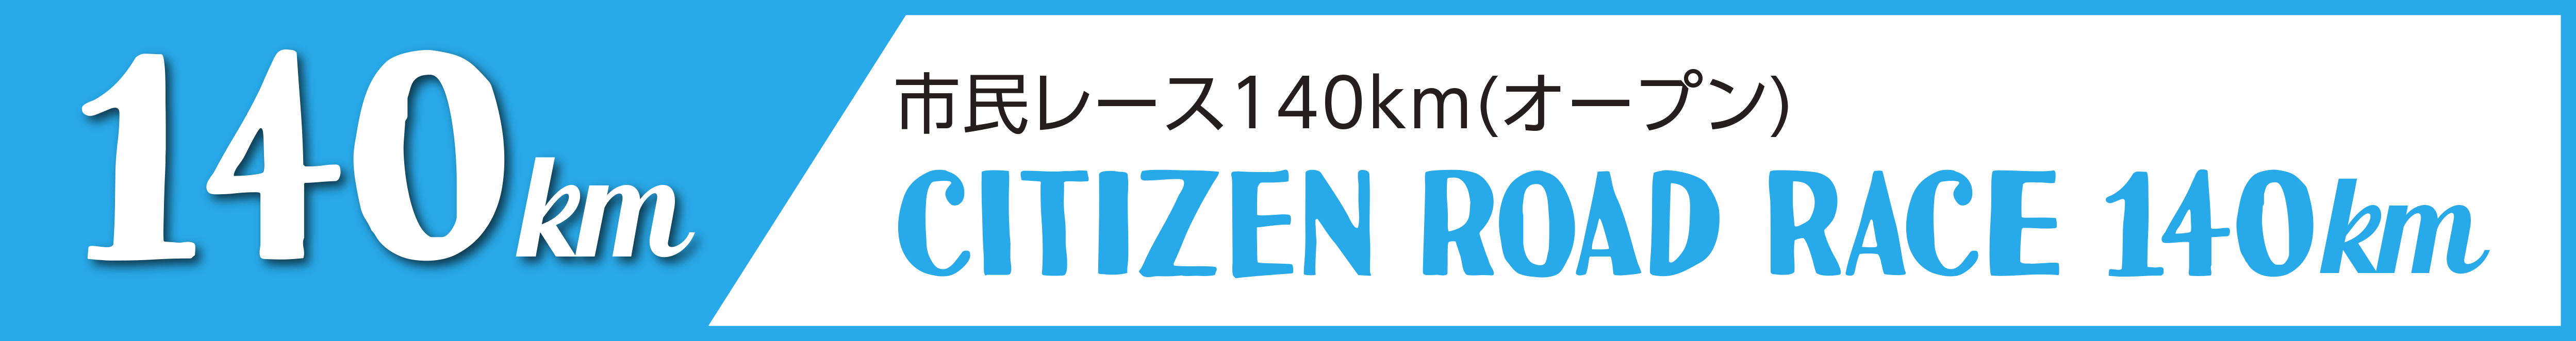 市民レース140km(オープン)